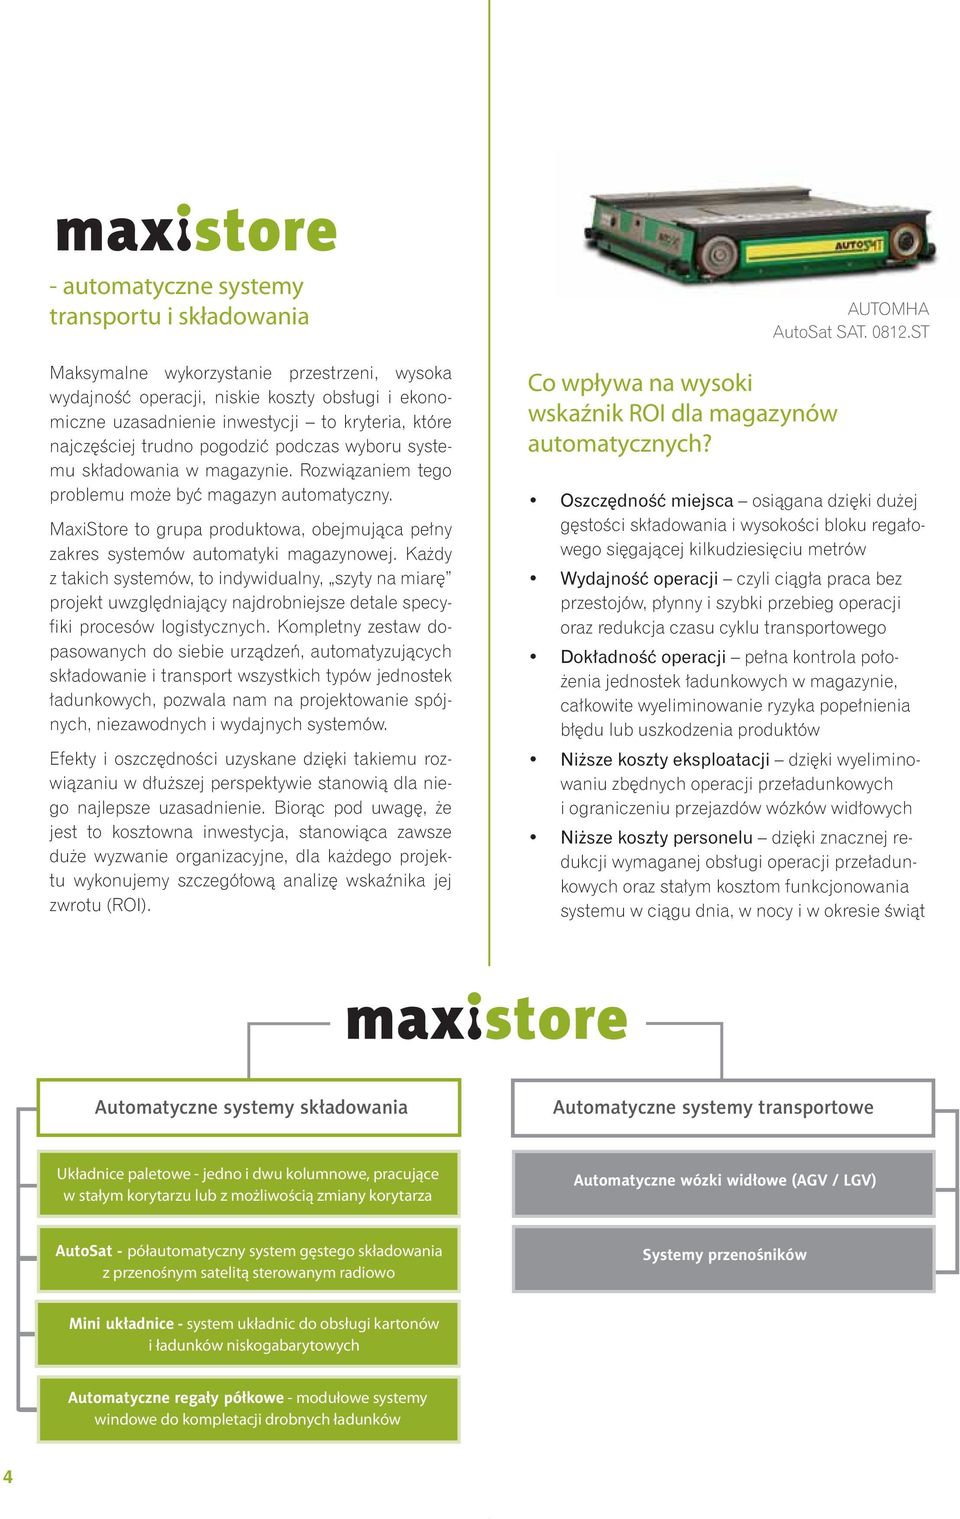 MaxiStore to grupa produktowa, obejmująca pełny zakres systemów automatyki magazynowej.